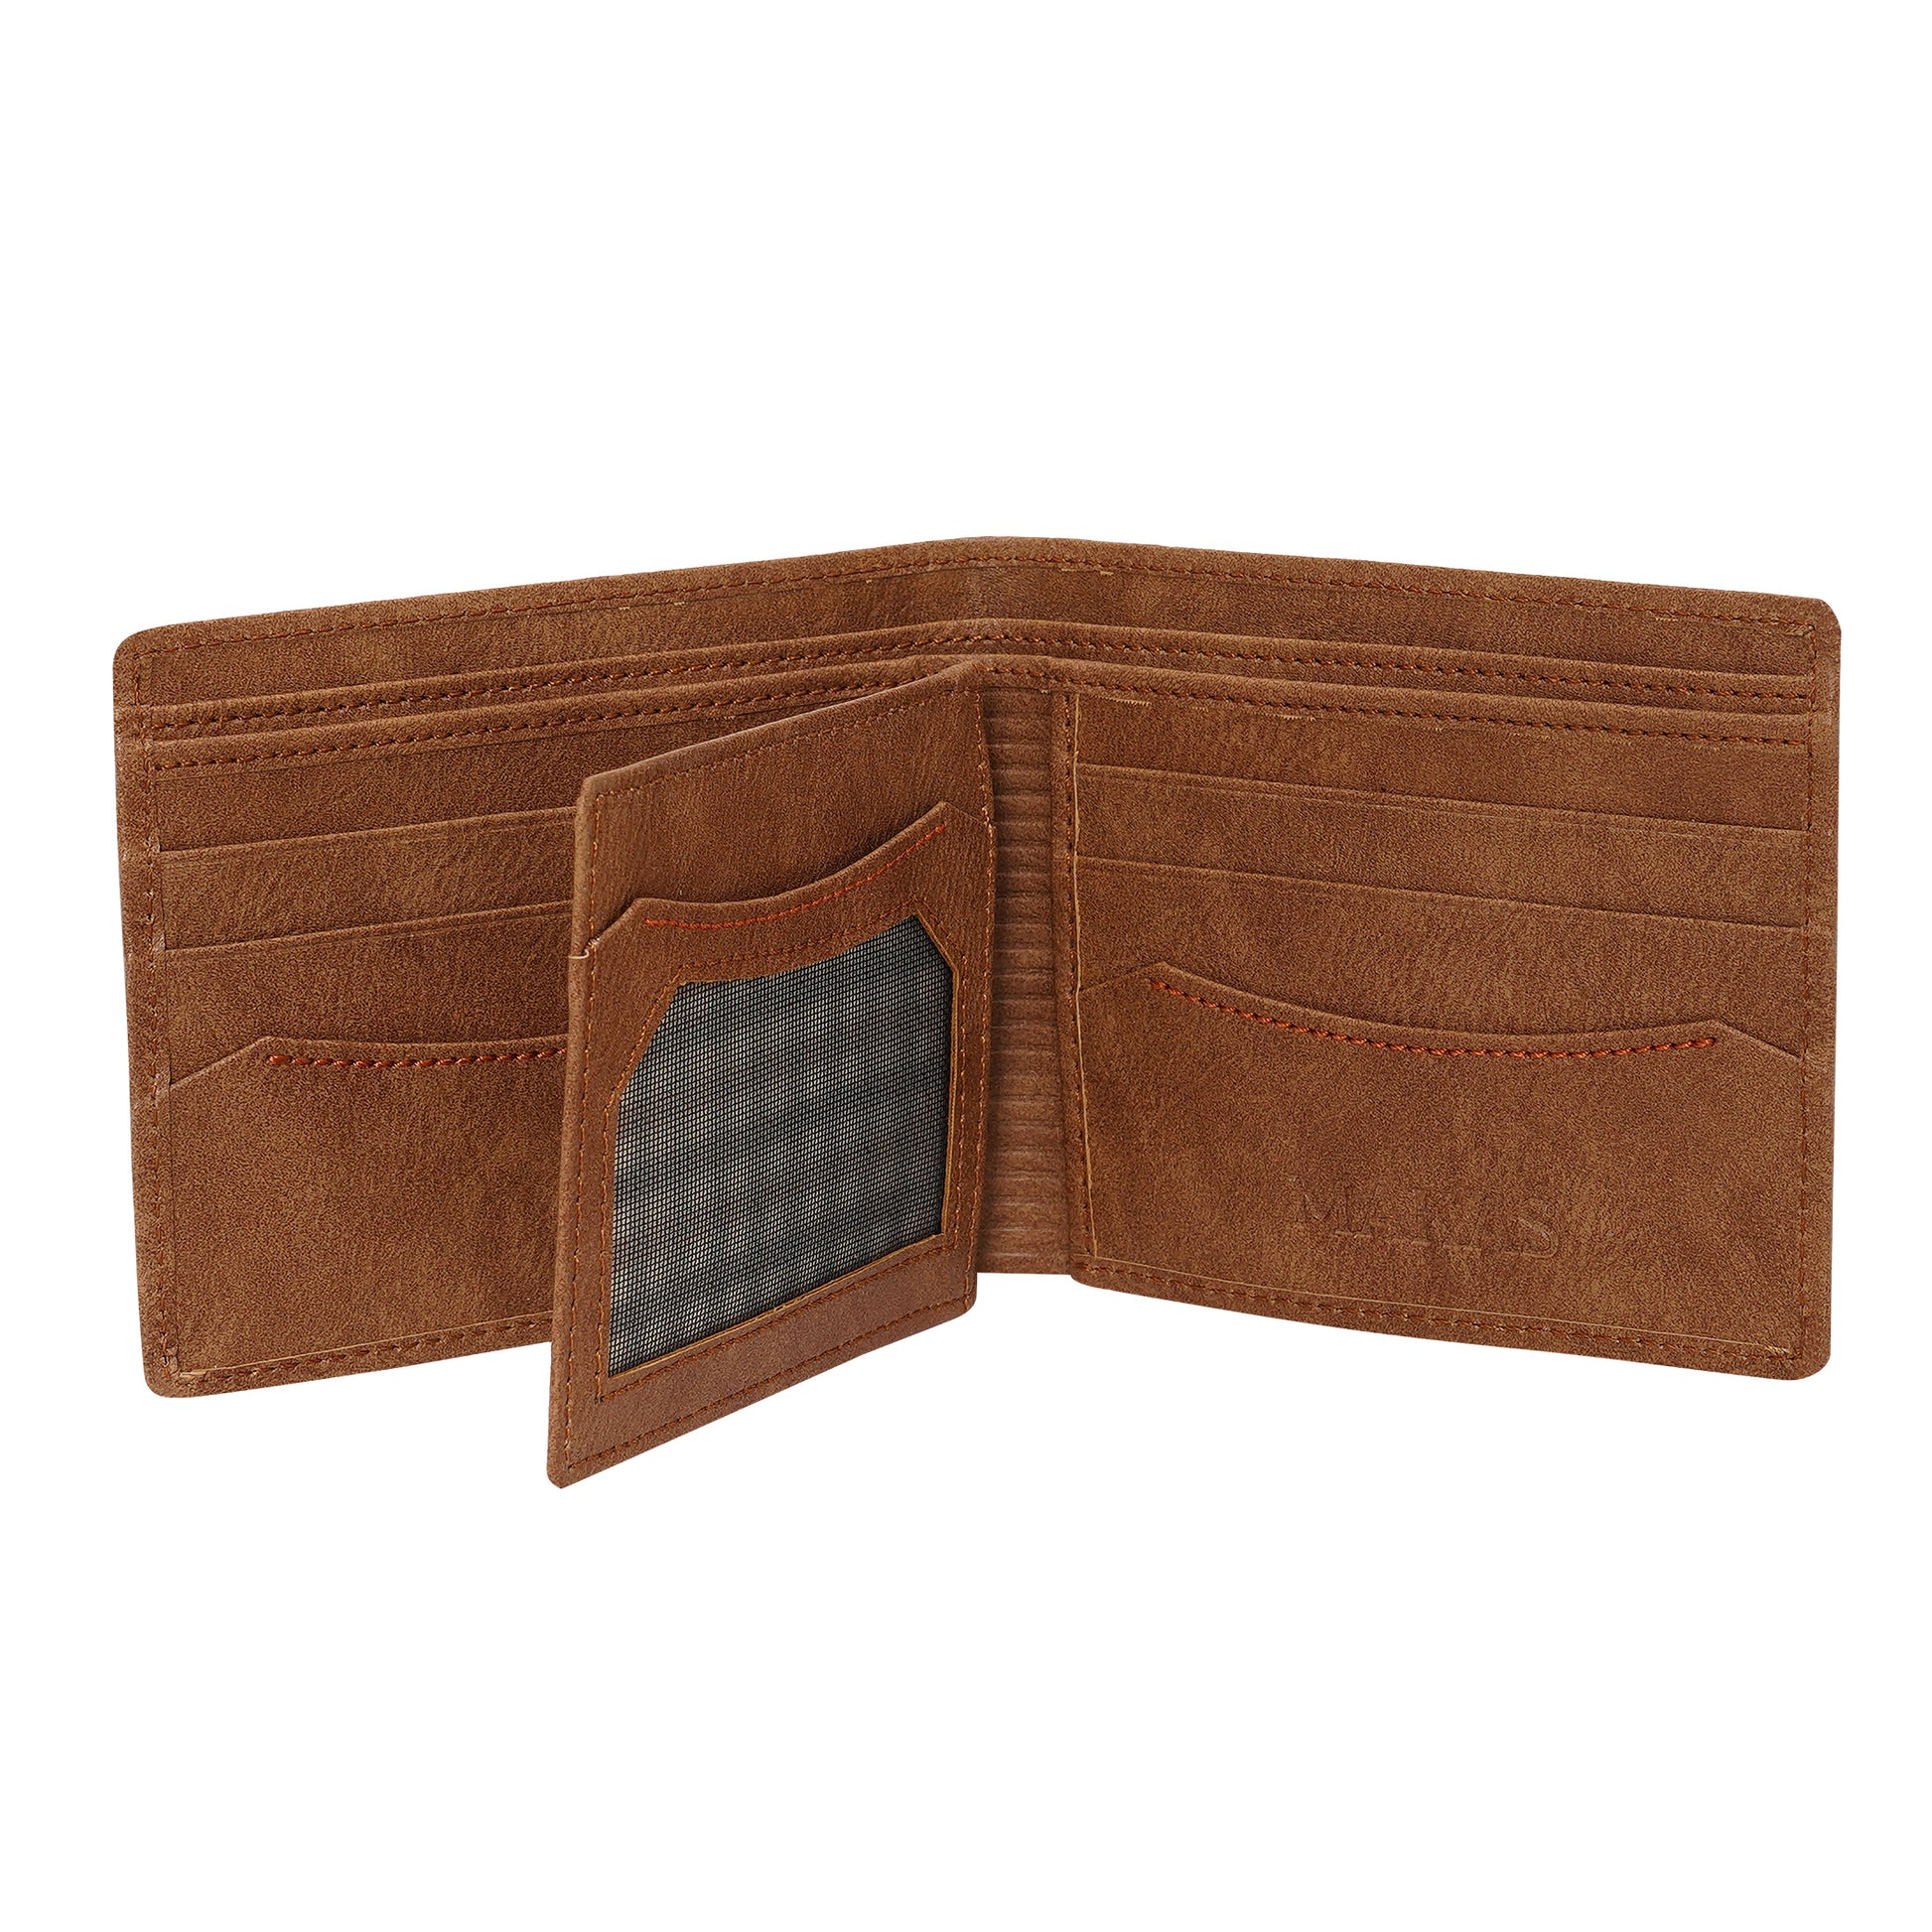 Makas men's wallet , internal look 2 ,color - Brown